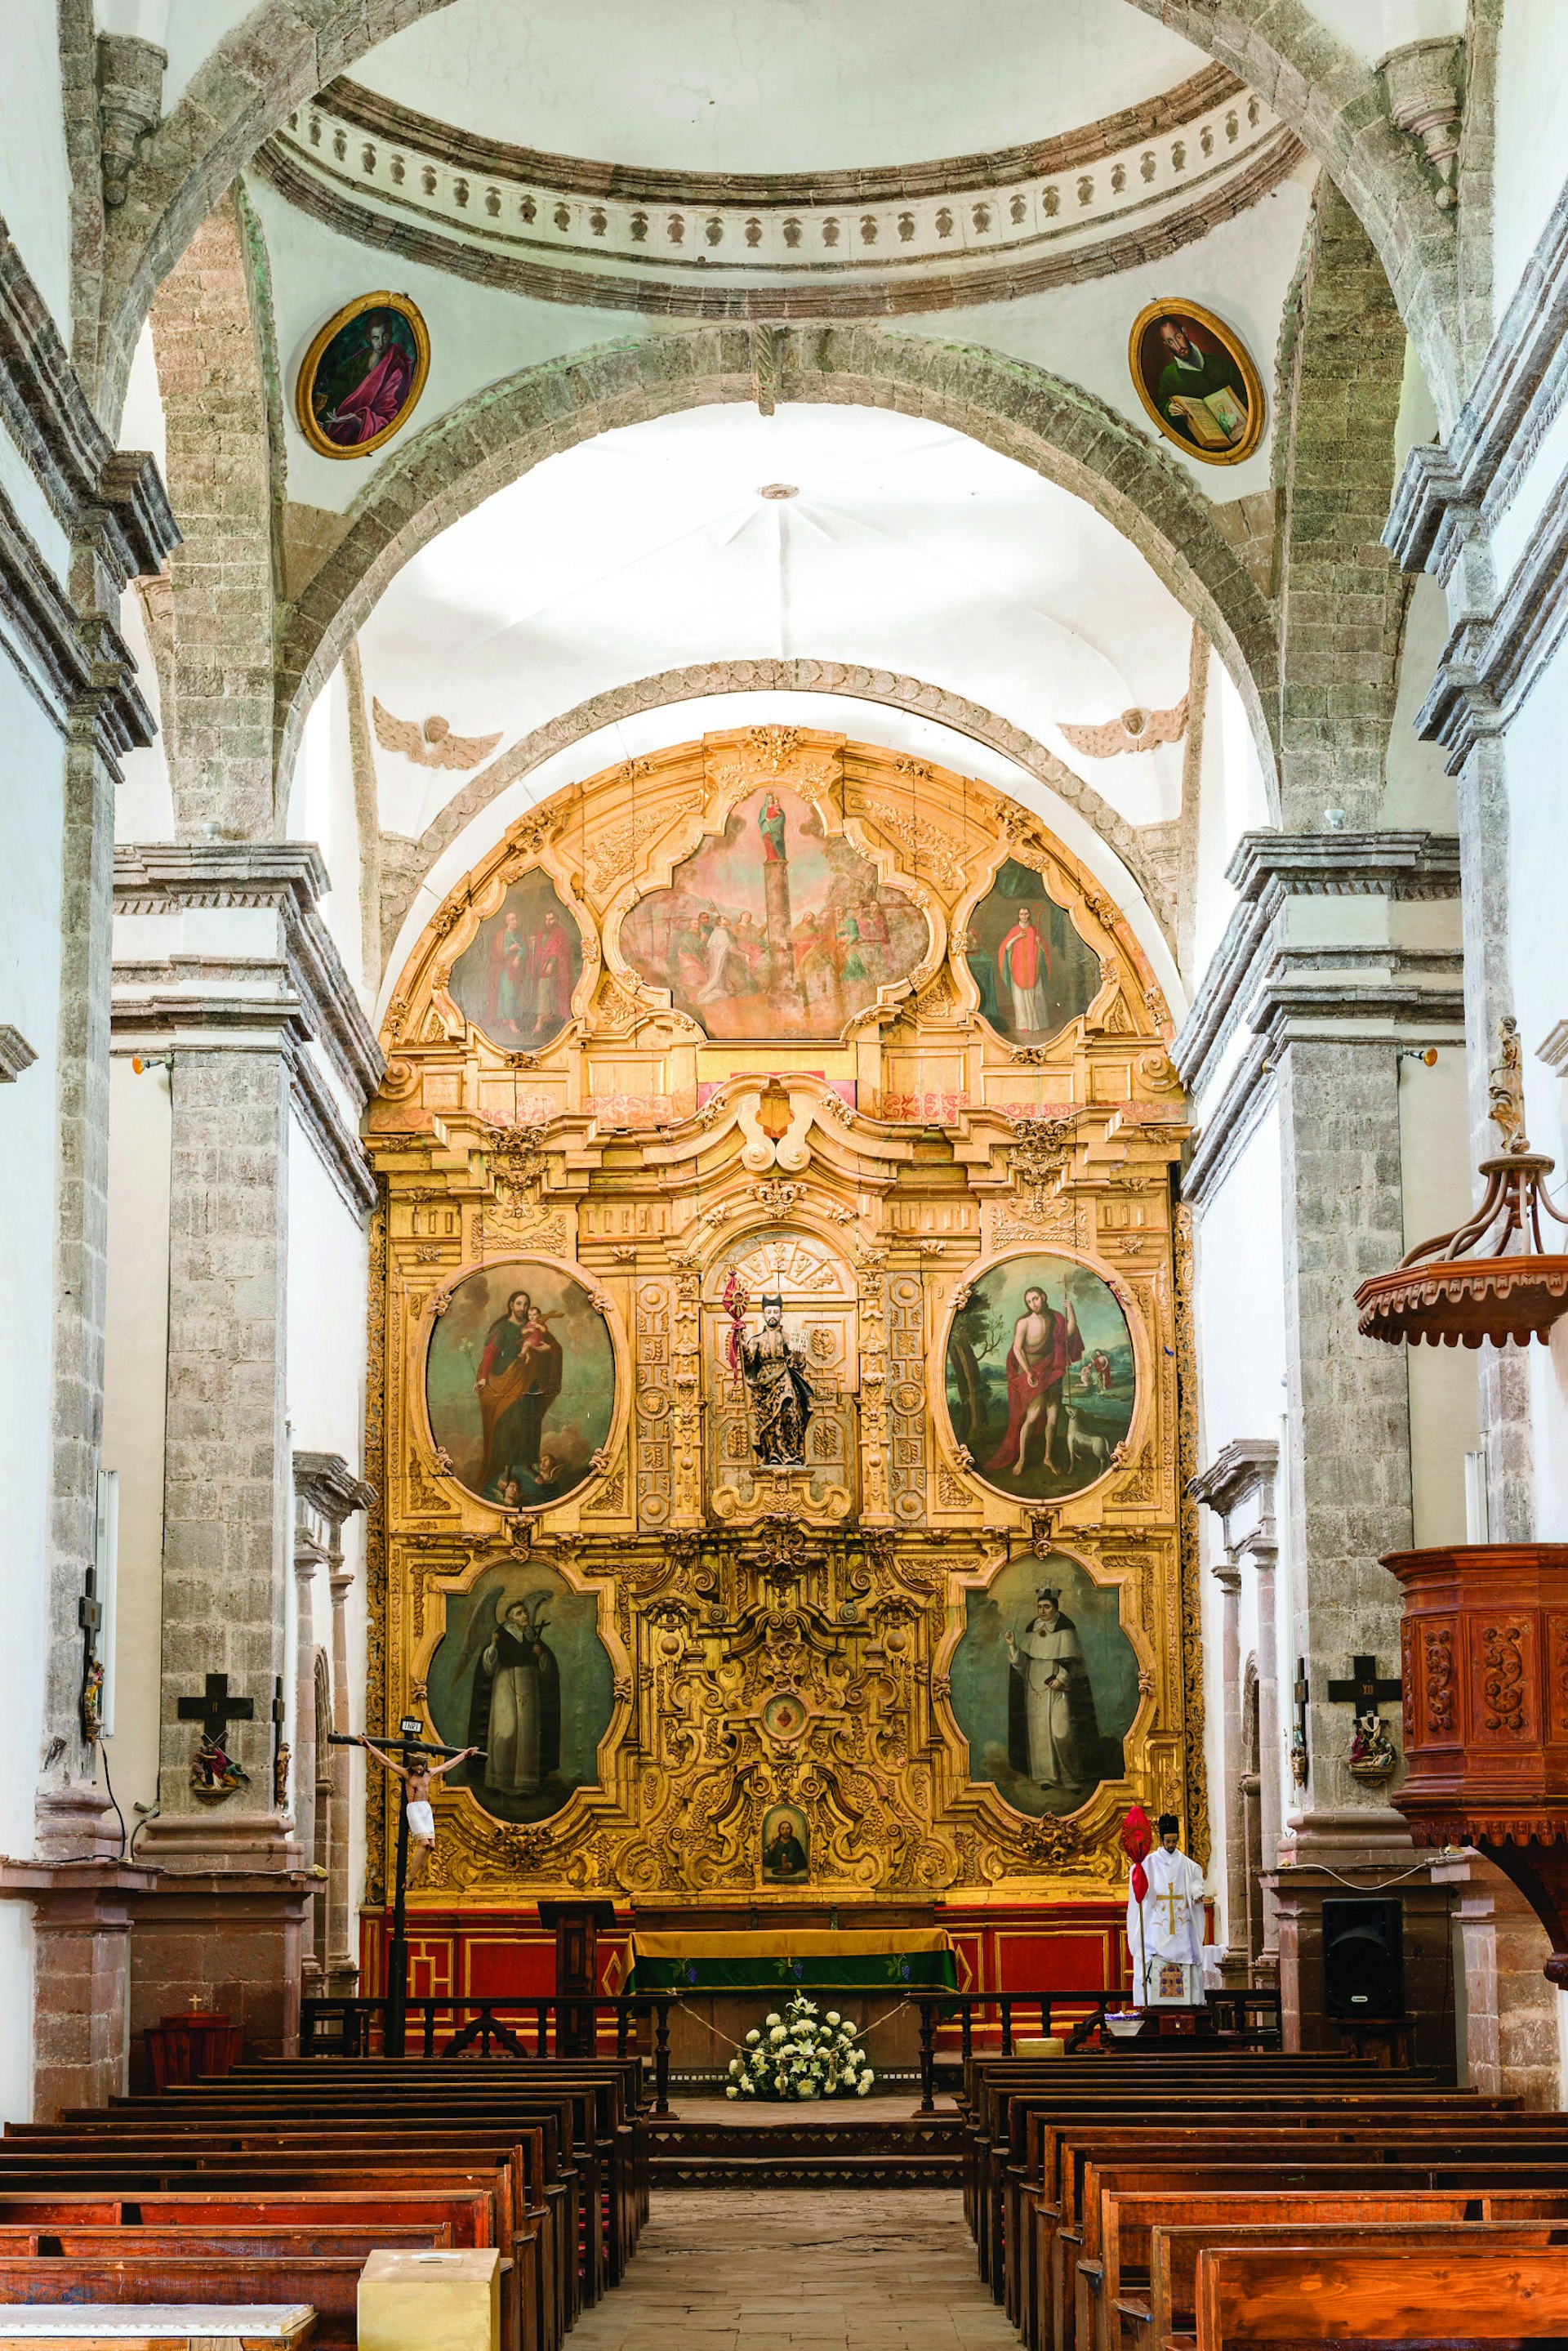 The Baroque retablo behind the altar in the Mision de San Ignacio